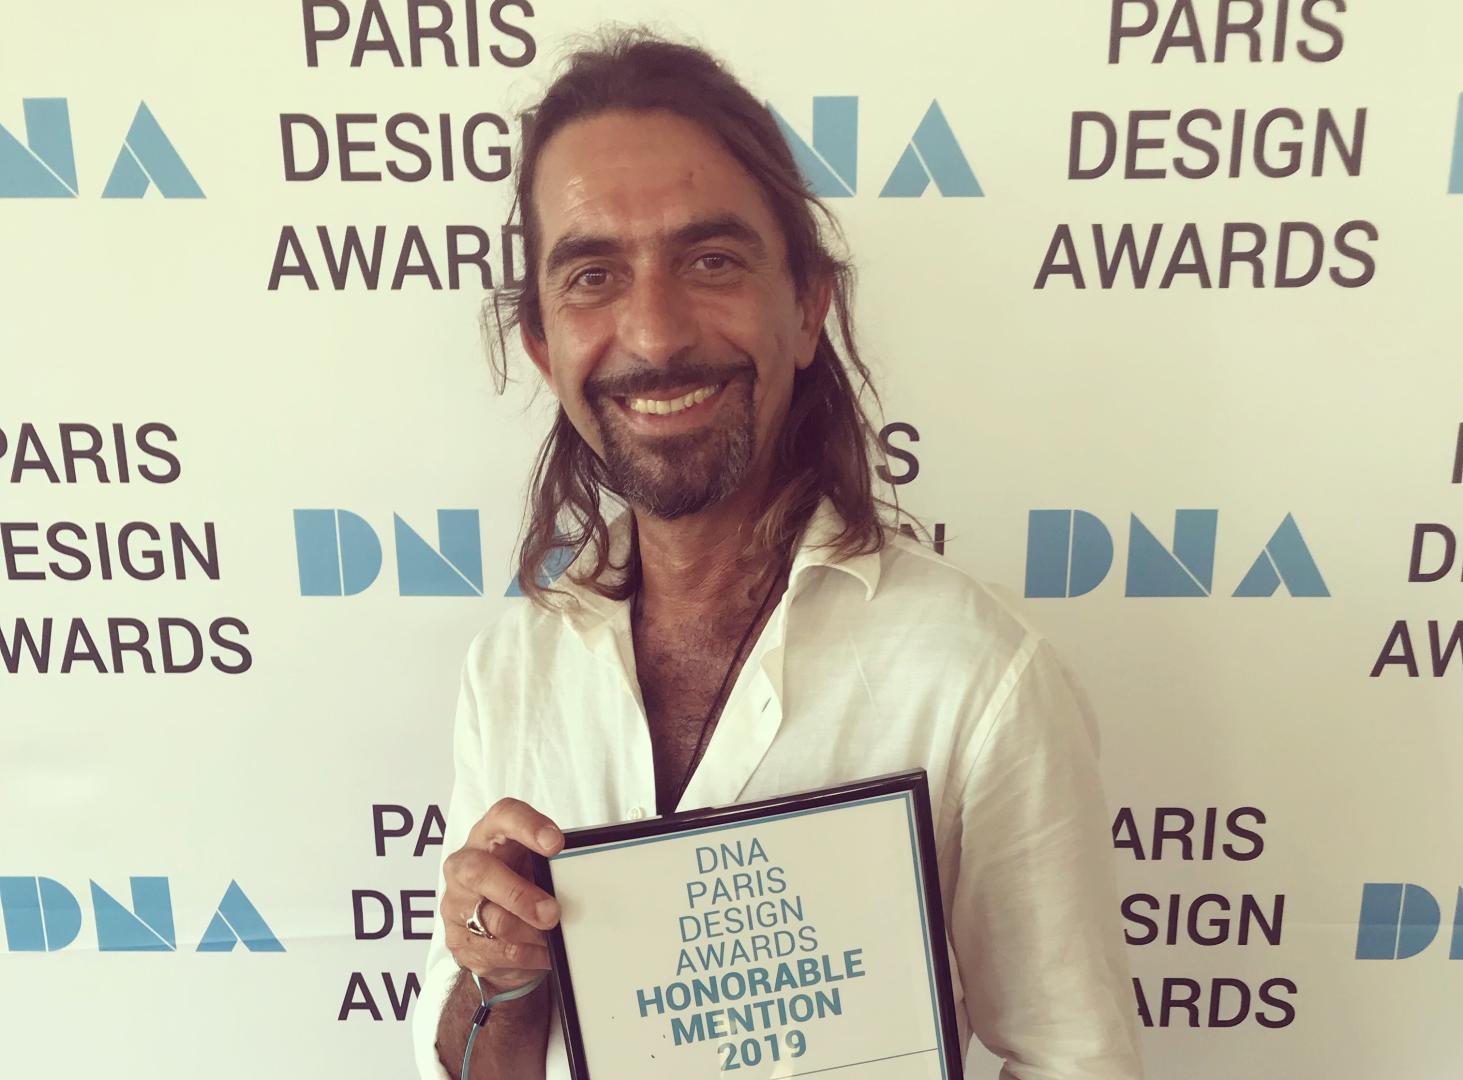 Giangi Razeto at the DNA Paris 2019